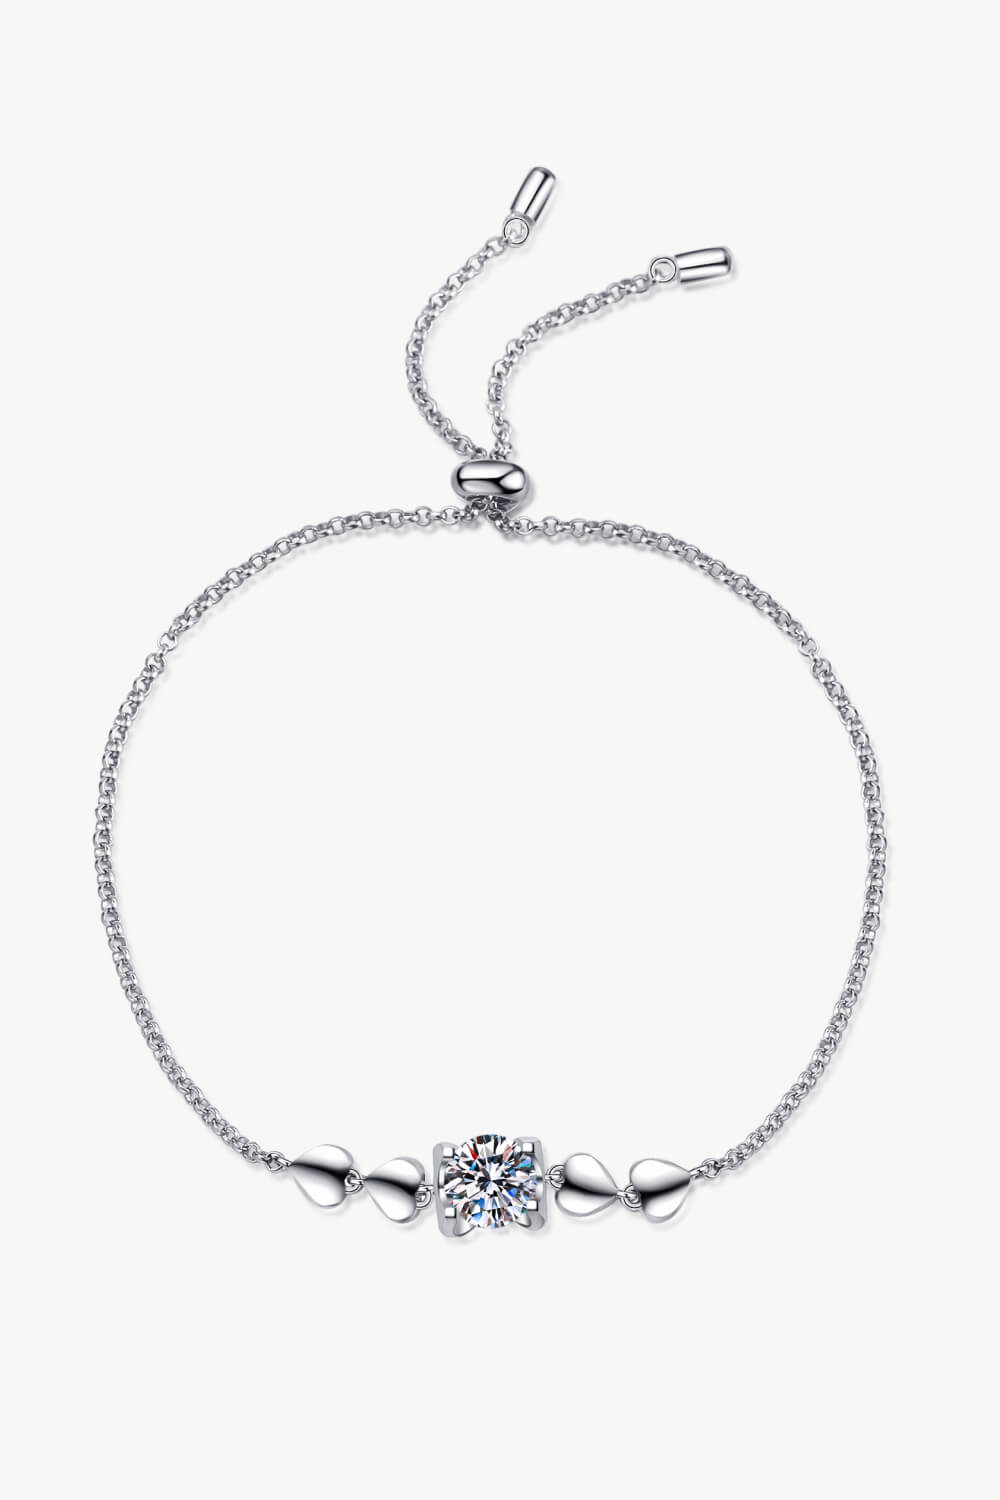 1 Carat Moissanite Heart Bracelet - DromedarShop.com Online Boutique